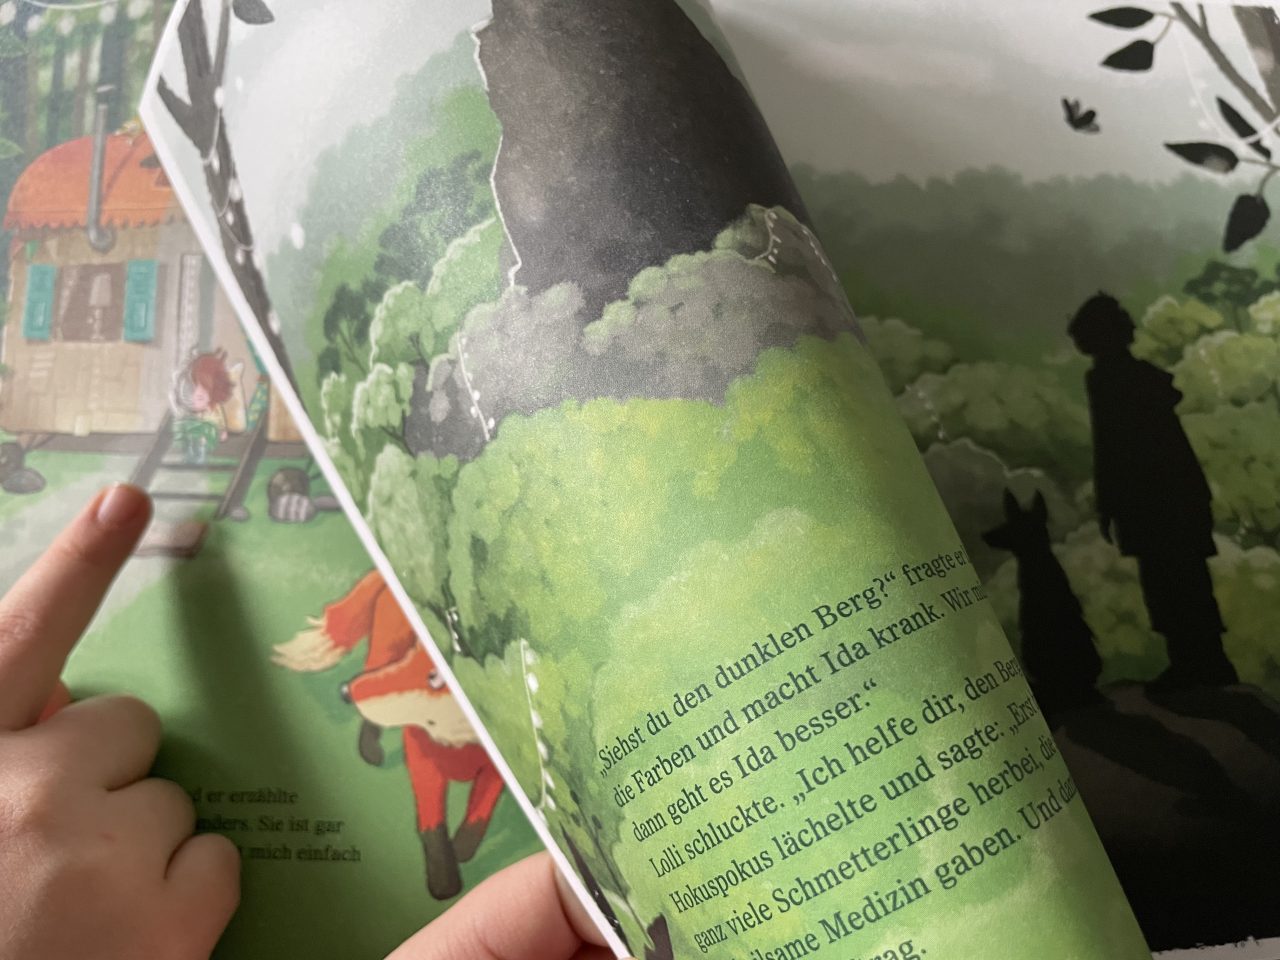 Einblick in das Kinderbuch "Ida und der Berg im Funkelwald" mit Blick auf den grauen Berg